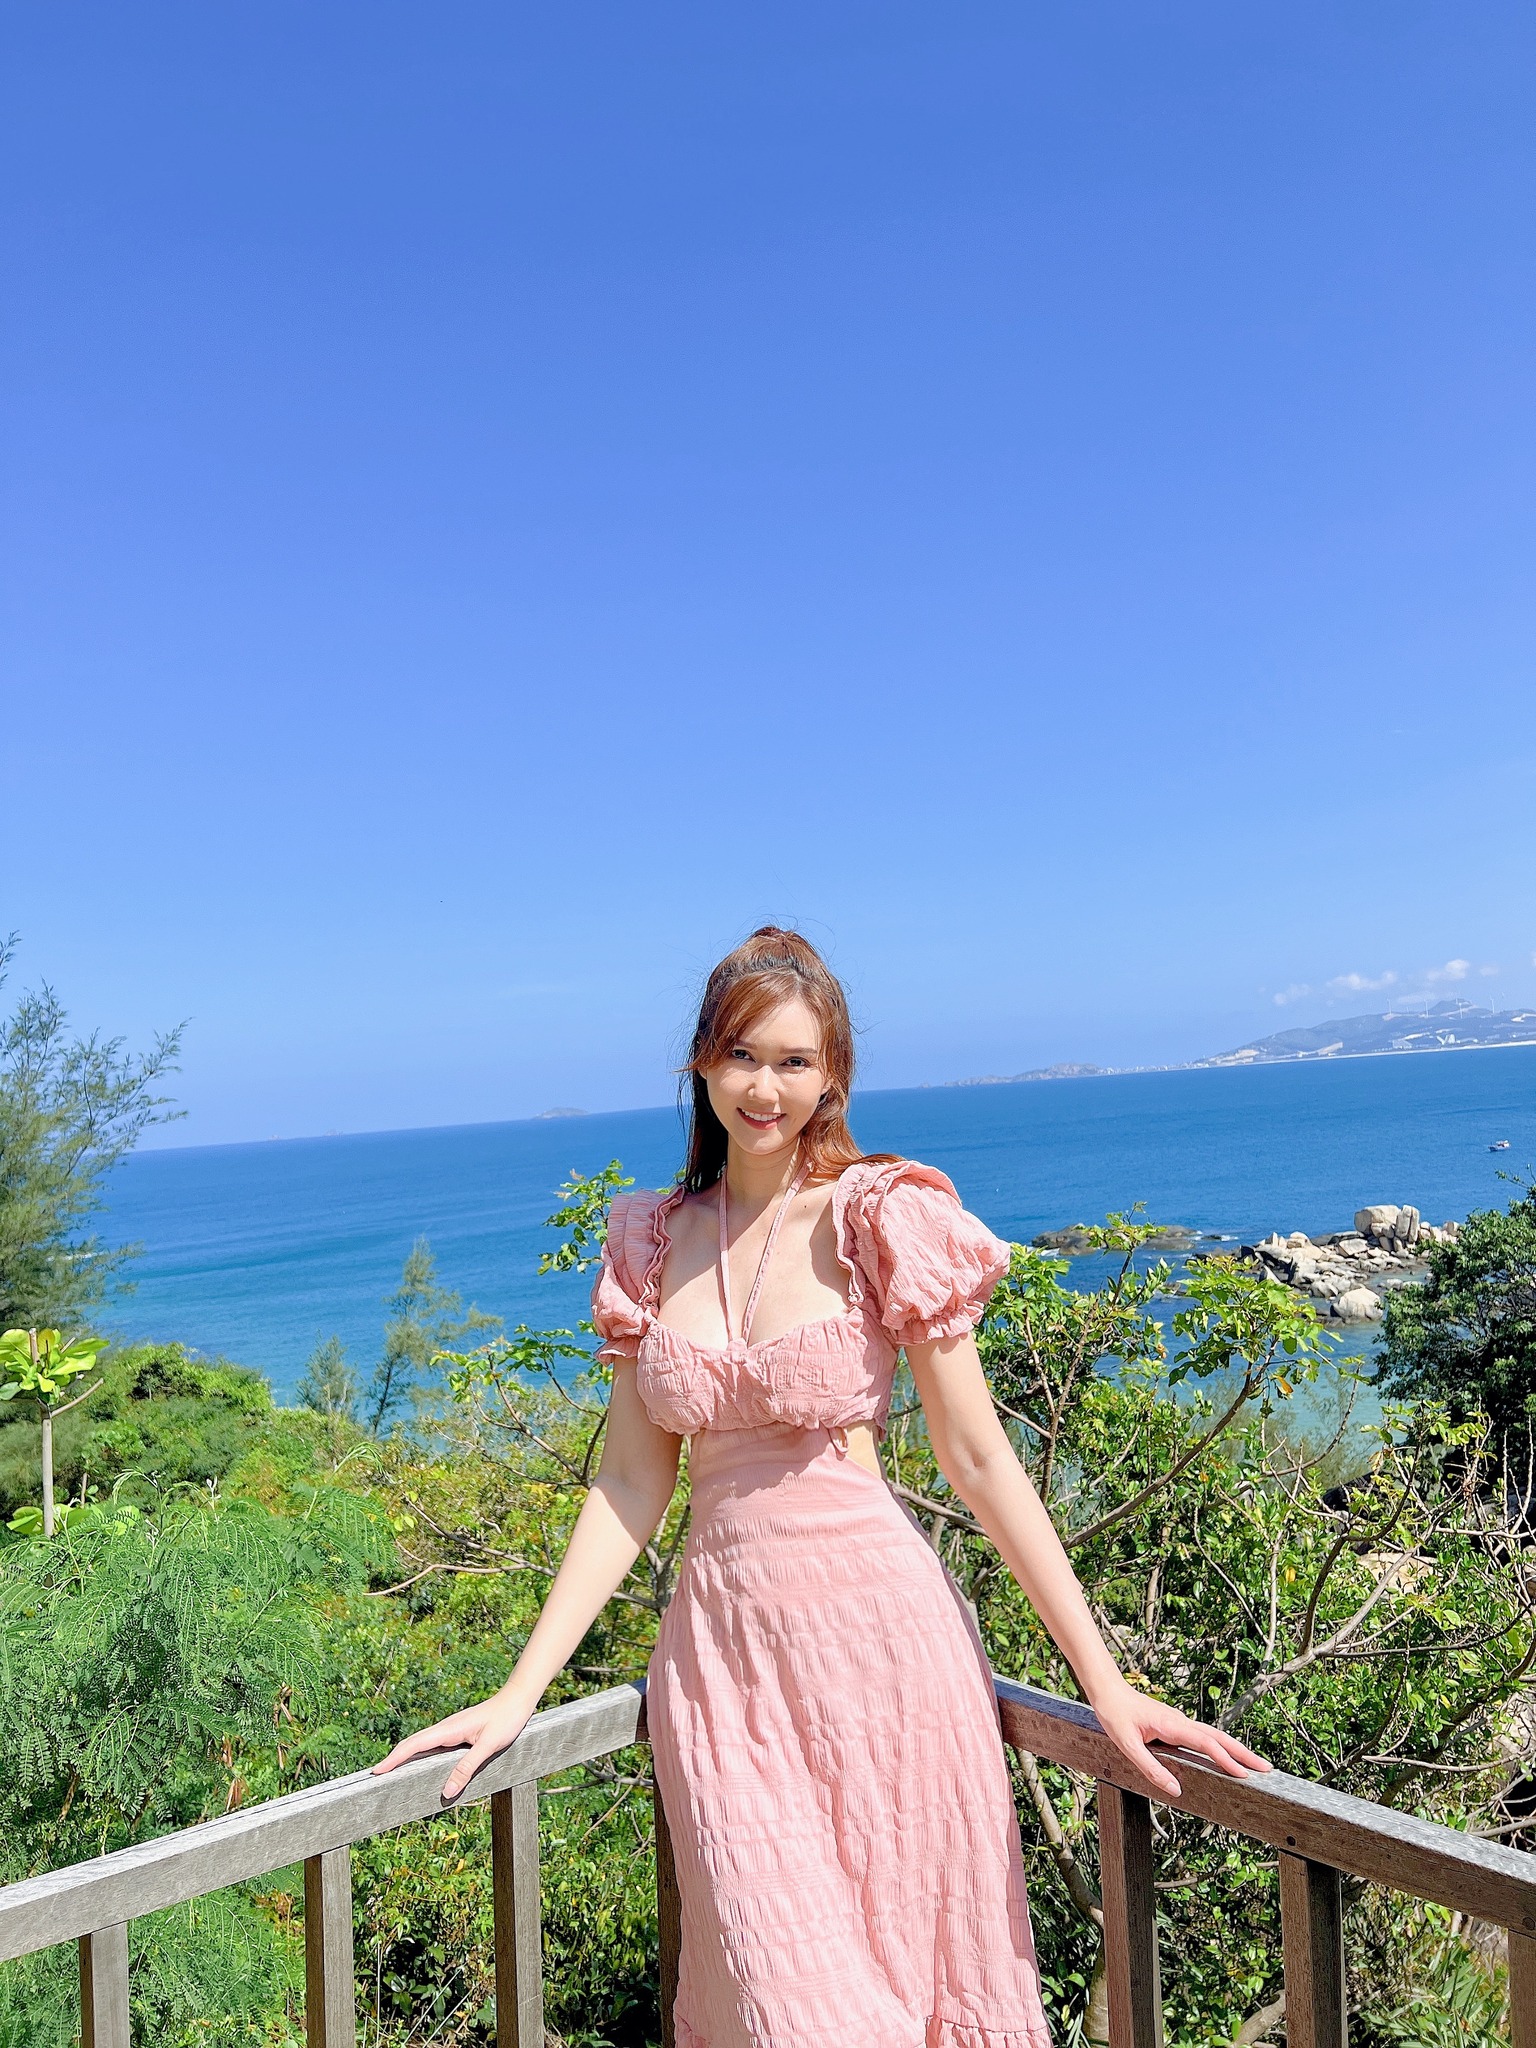 Hương Giang đặc biệt yêu thích những chiếc váy dài màu hồng hoặc hoa nhí nền hồng. Màu sắc này cũng rất phù hợp với vẻ ngoài yểu điệu, nữ tính của nữ diễn viên.